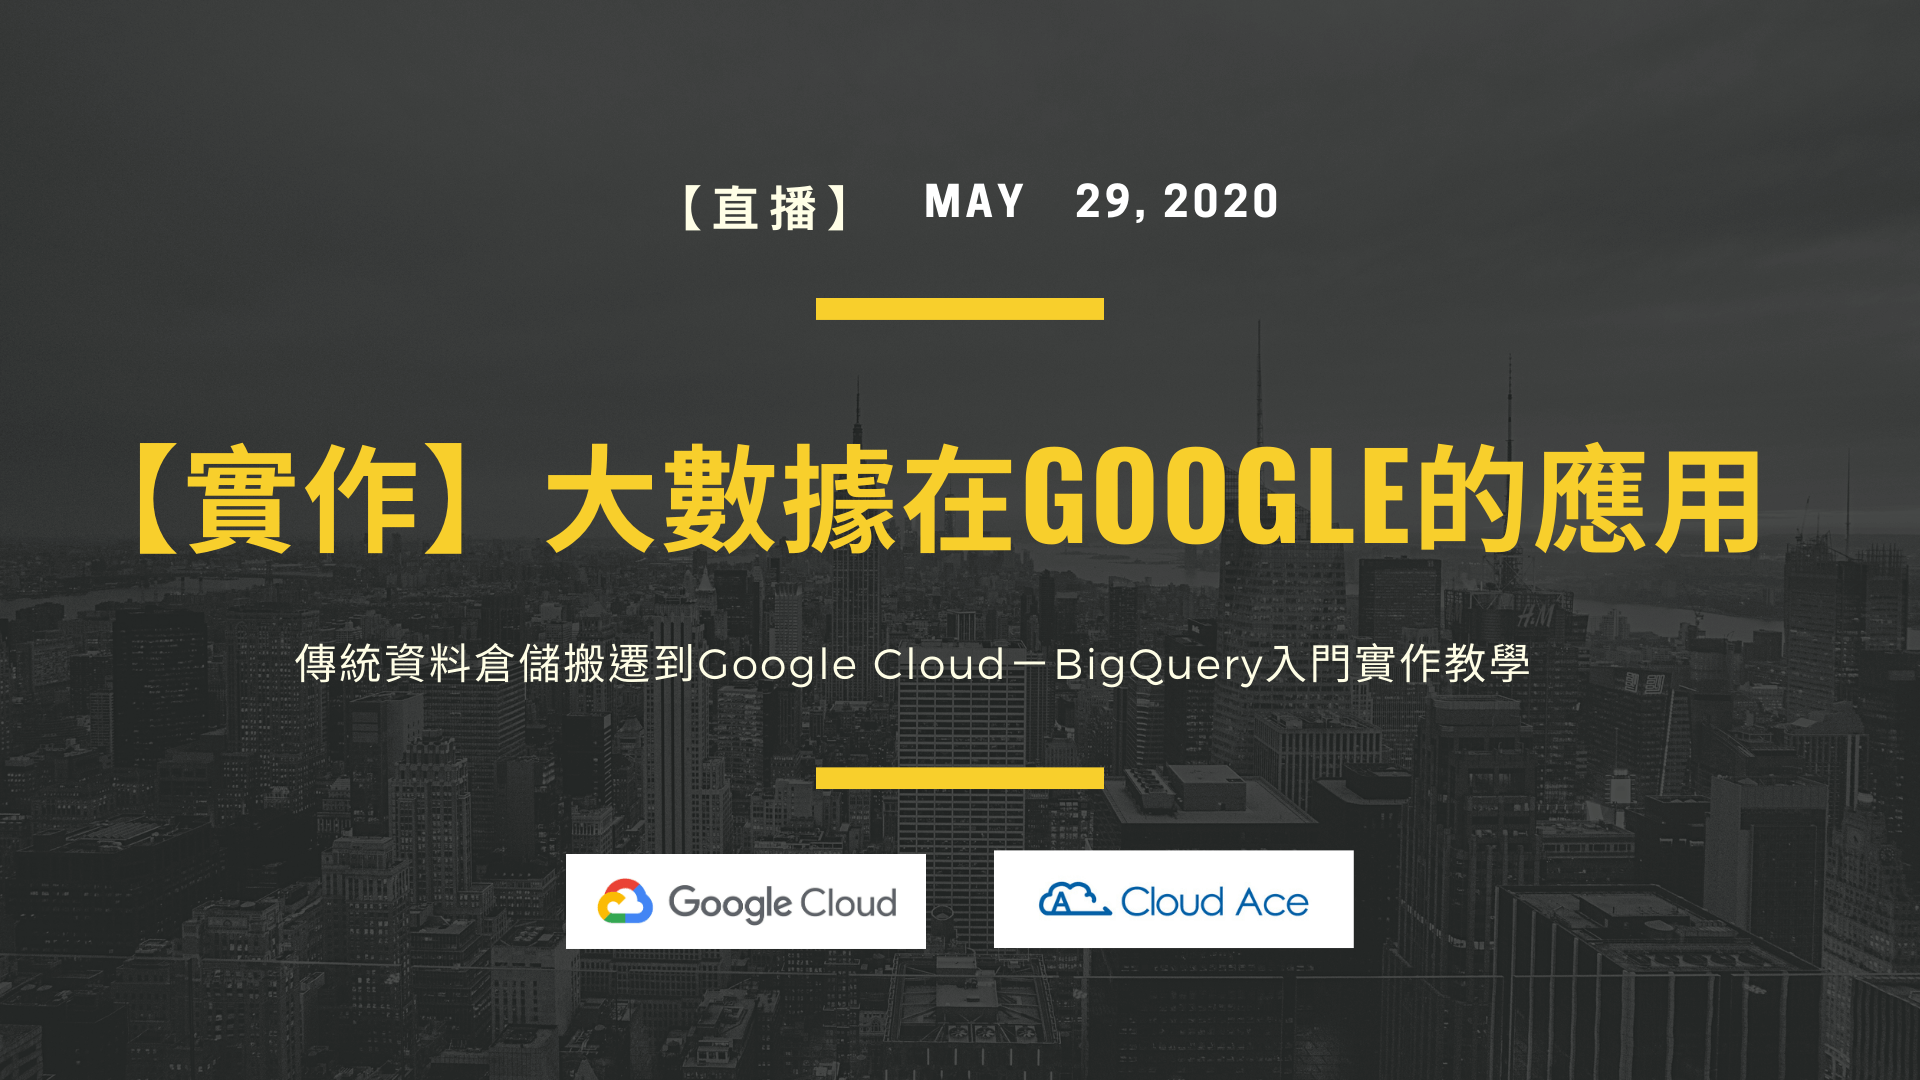 5/29 傳統資料倉儲搬遷到Google Cloud，BigQuery入門實作教學